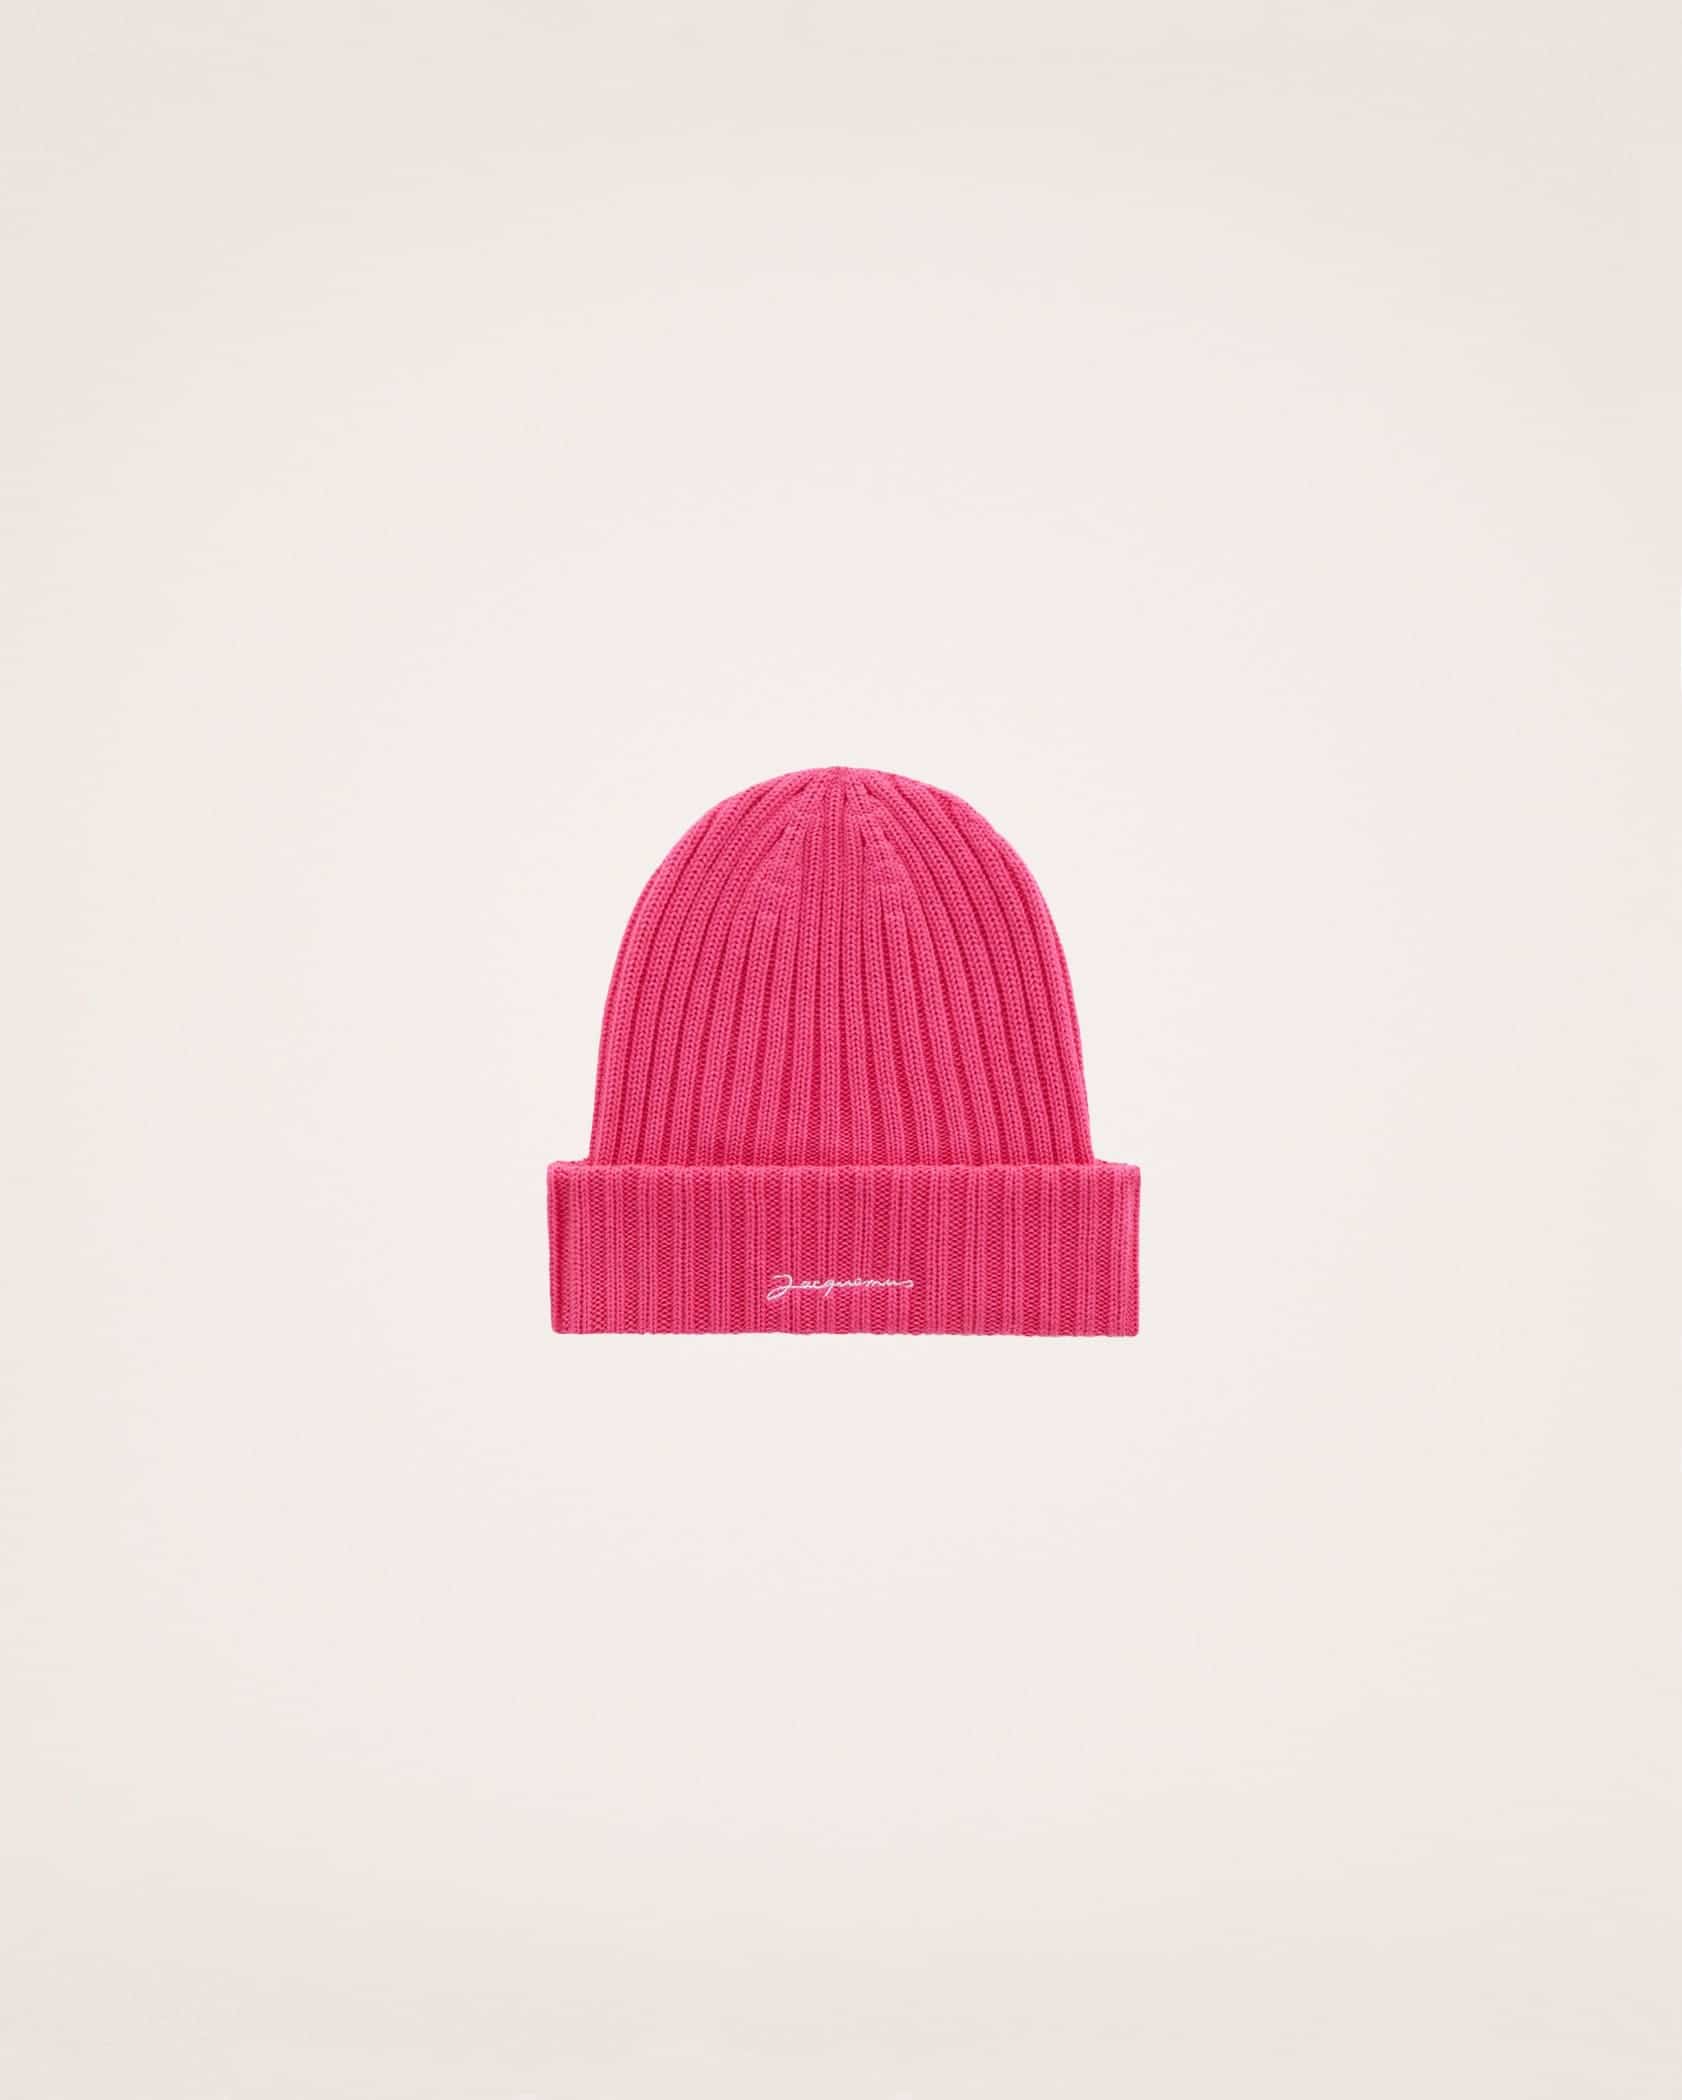 810_le_bonnet_pink